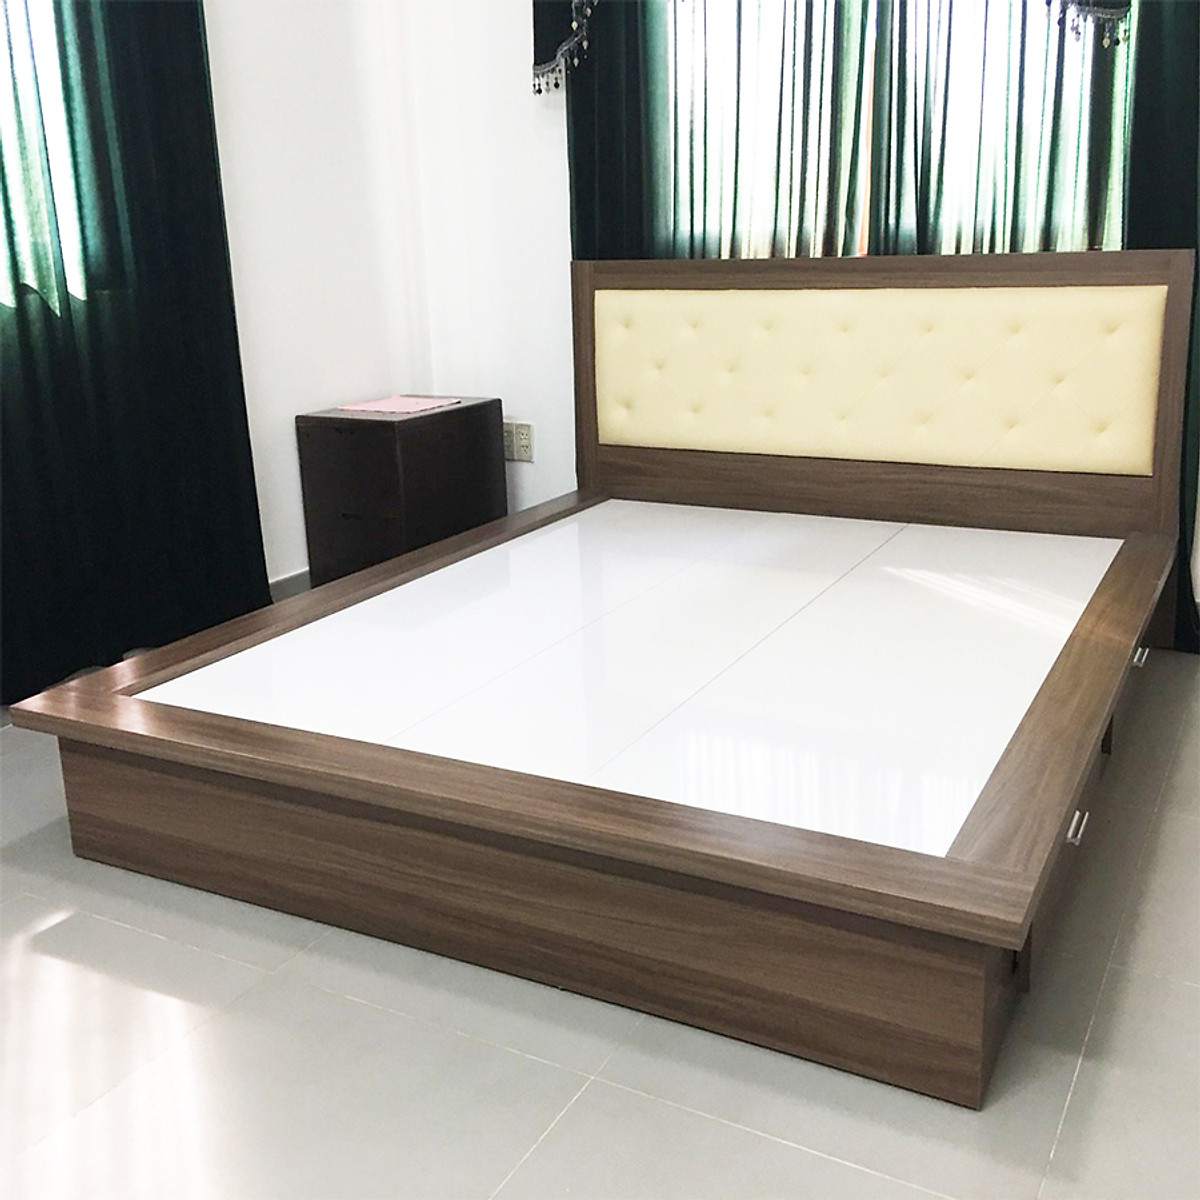 Giường ngủ 2 hộc kéo Tundo 180cm x 200cm